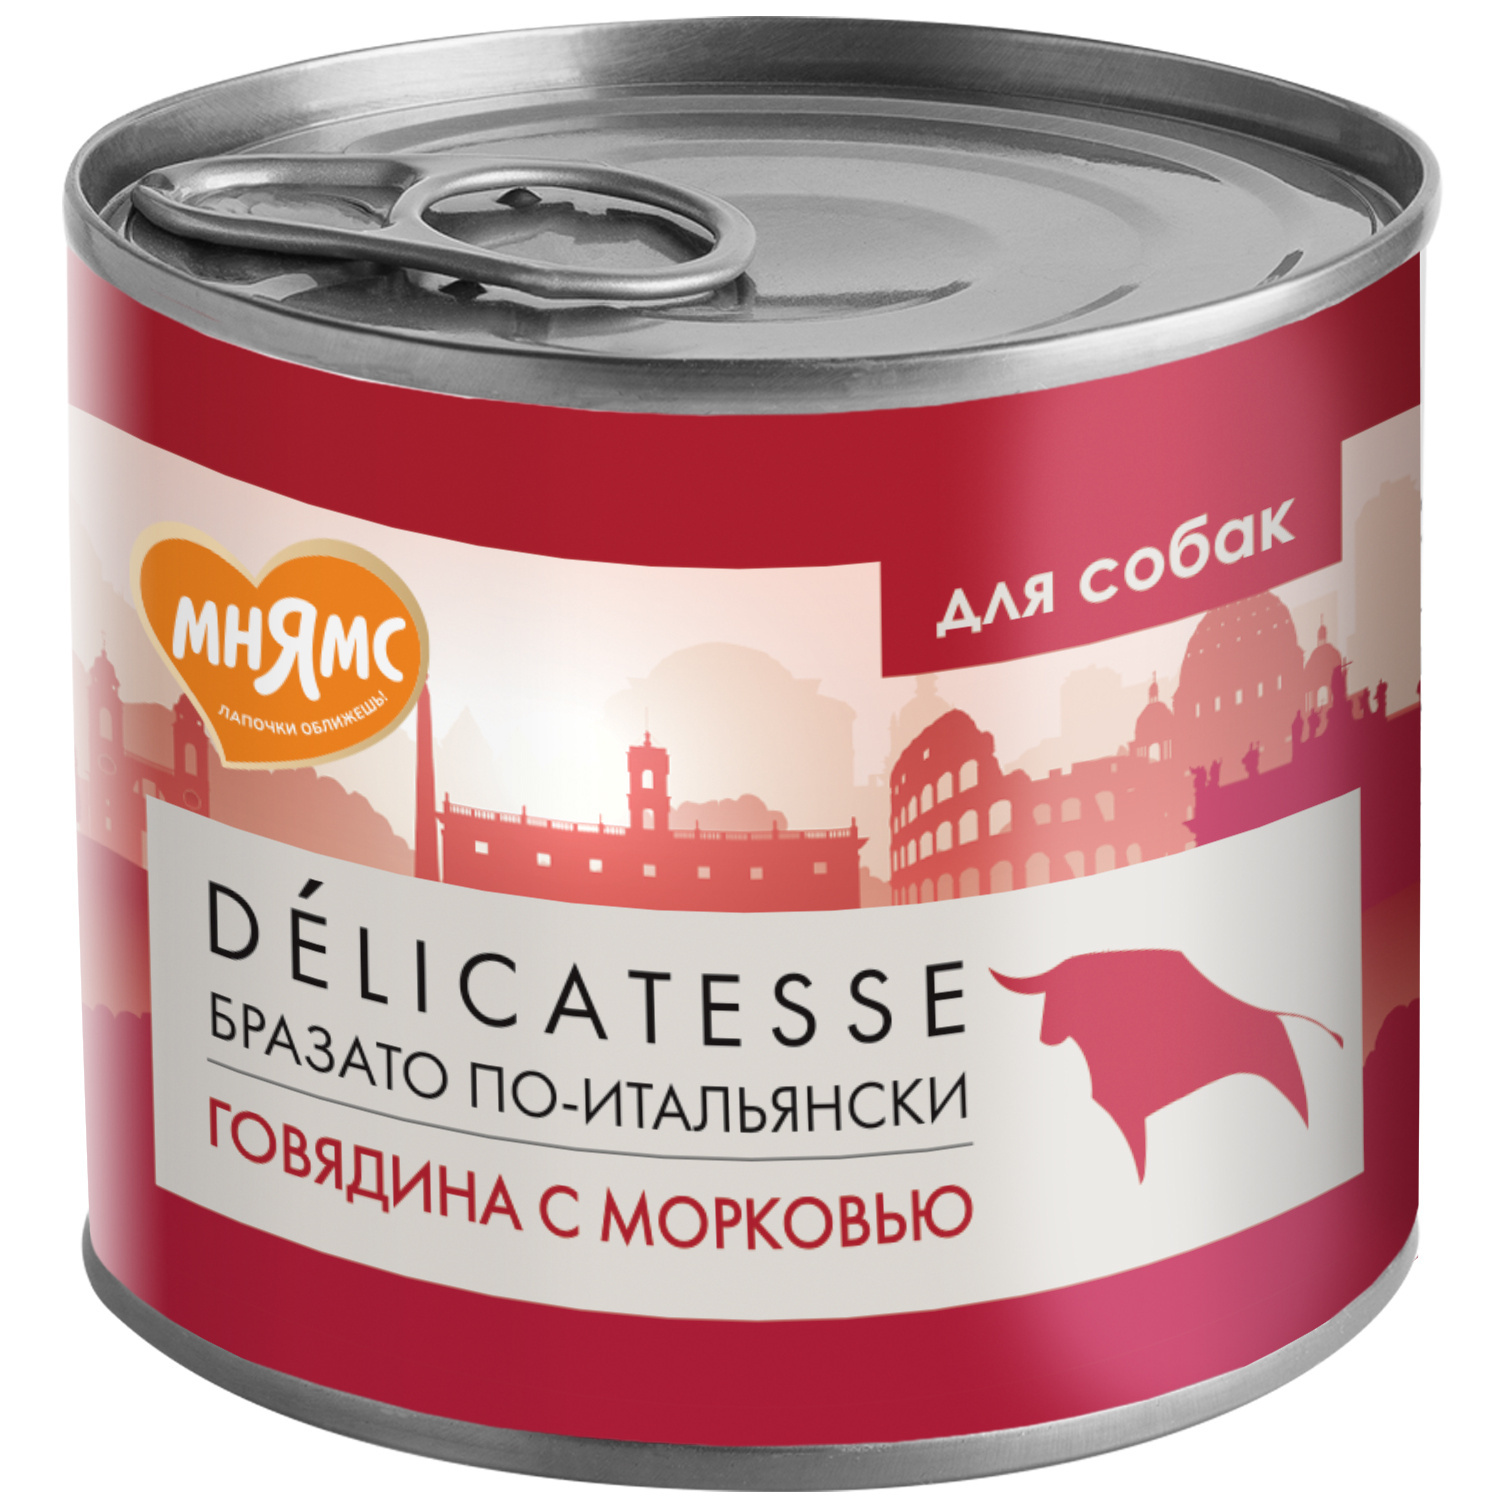 Мнямс Мнямс консервы Бразато по-итальянски для собак всех пород из говядины с морковью (200 г)